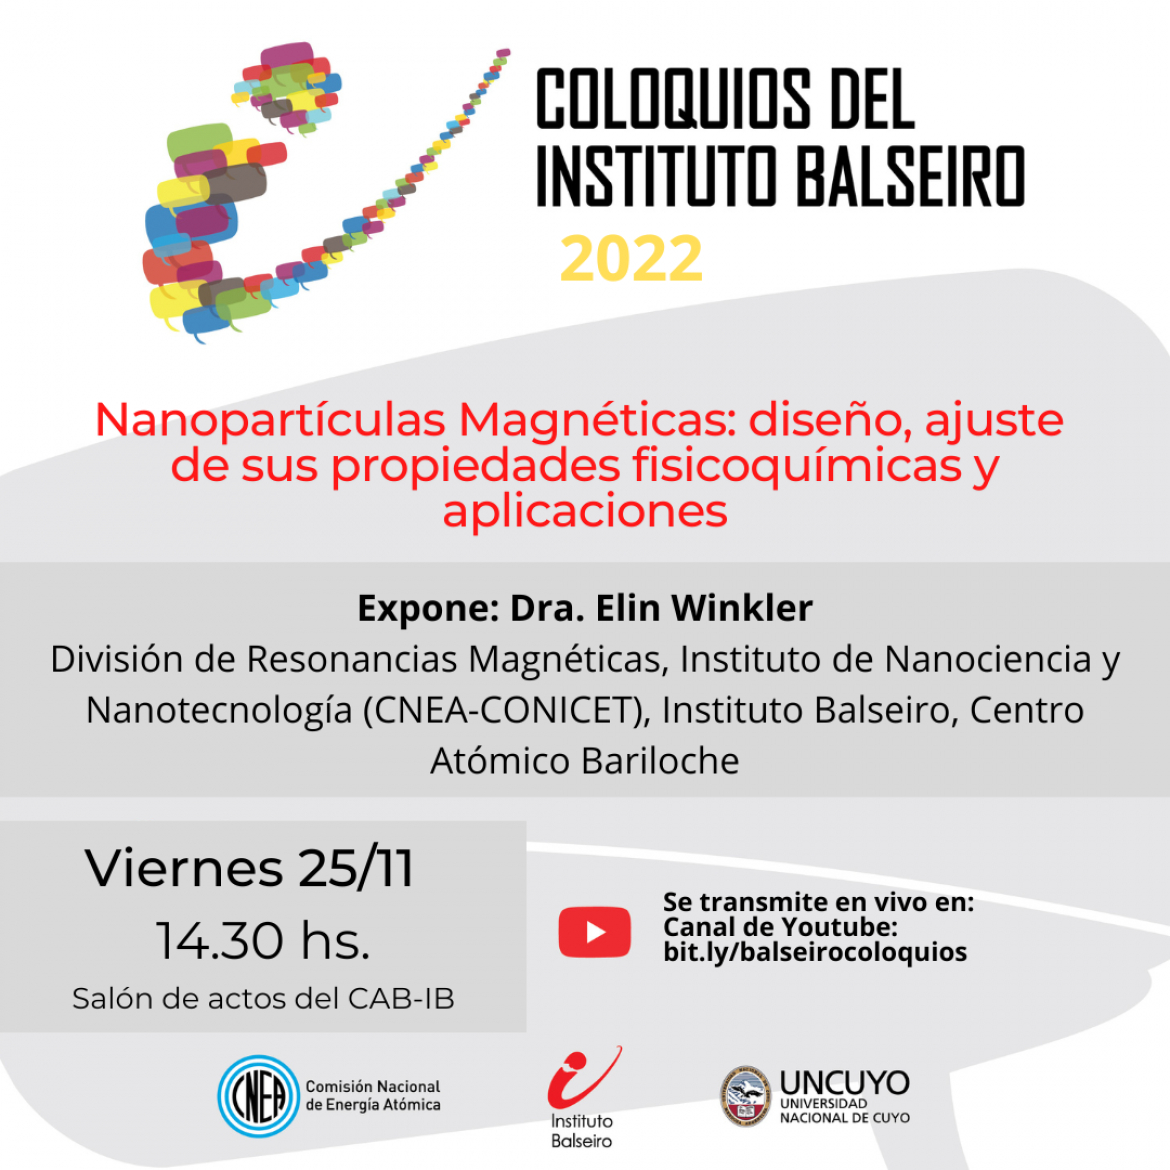 COLOQUIO DEL 25/11: Nanopartículas Magnéticas: diseño, ajuste de sus propiedades fisicoquímicas y aplicaciones